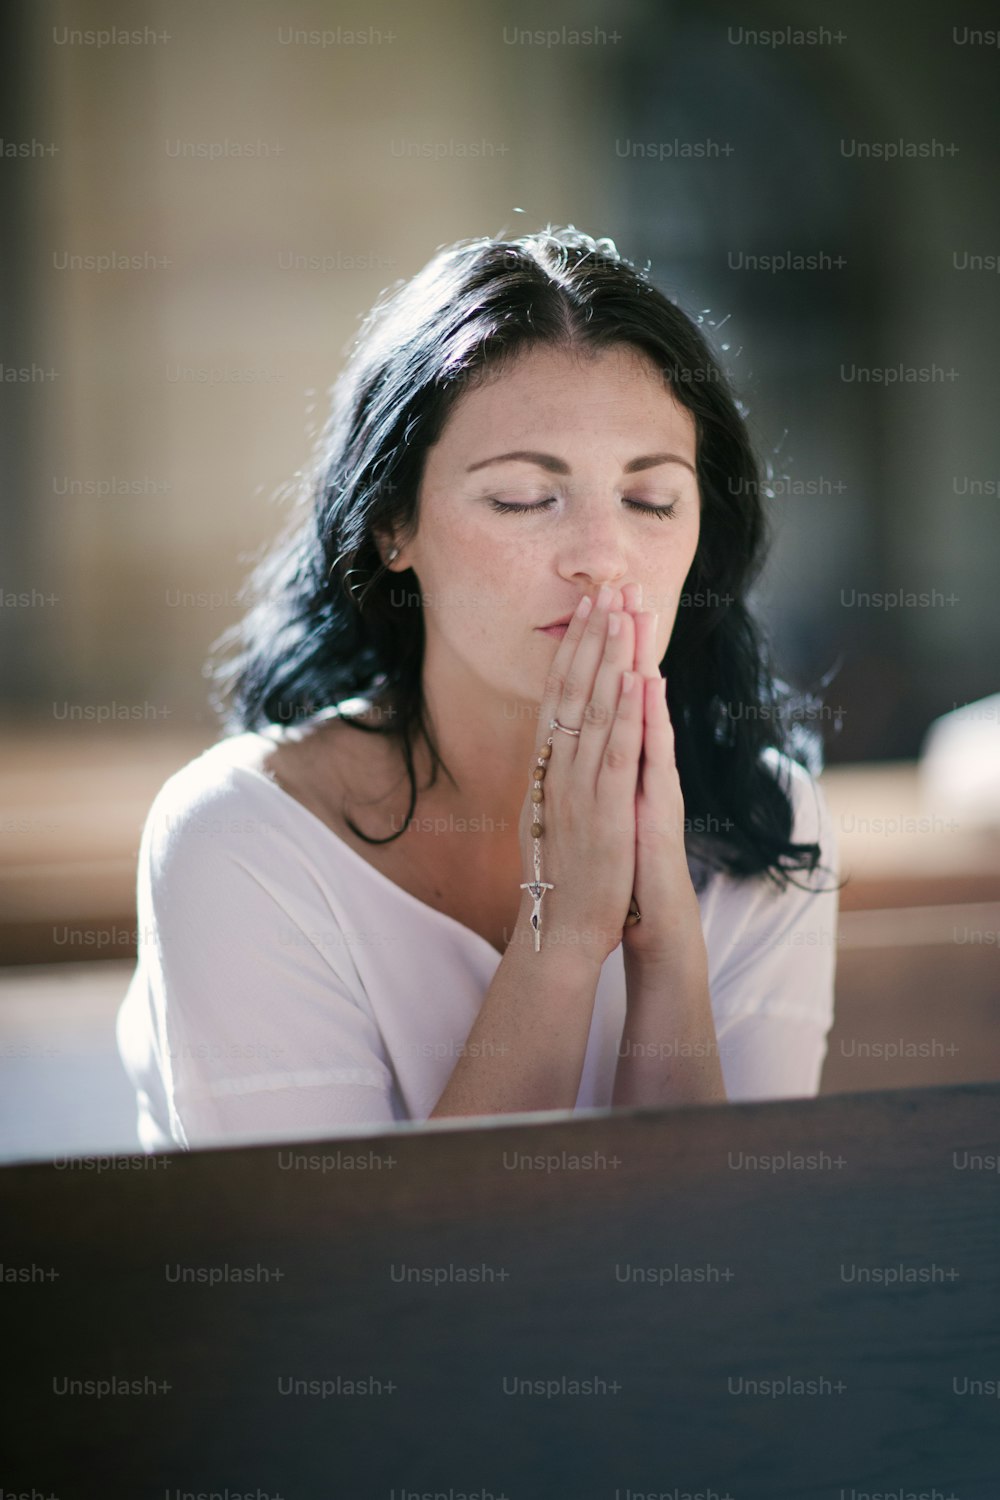 교회에서 묵주를 들고 기도하는 아름다운 여자